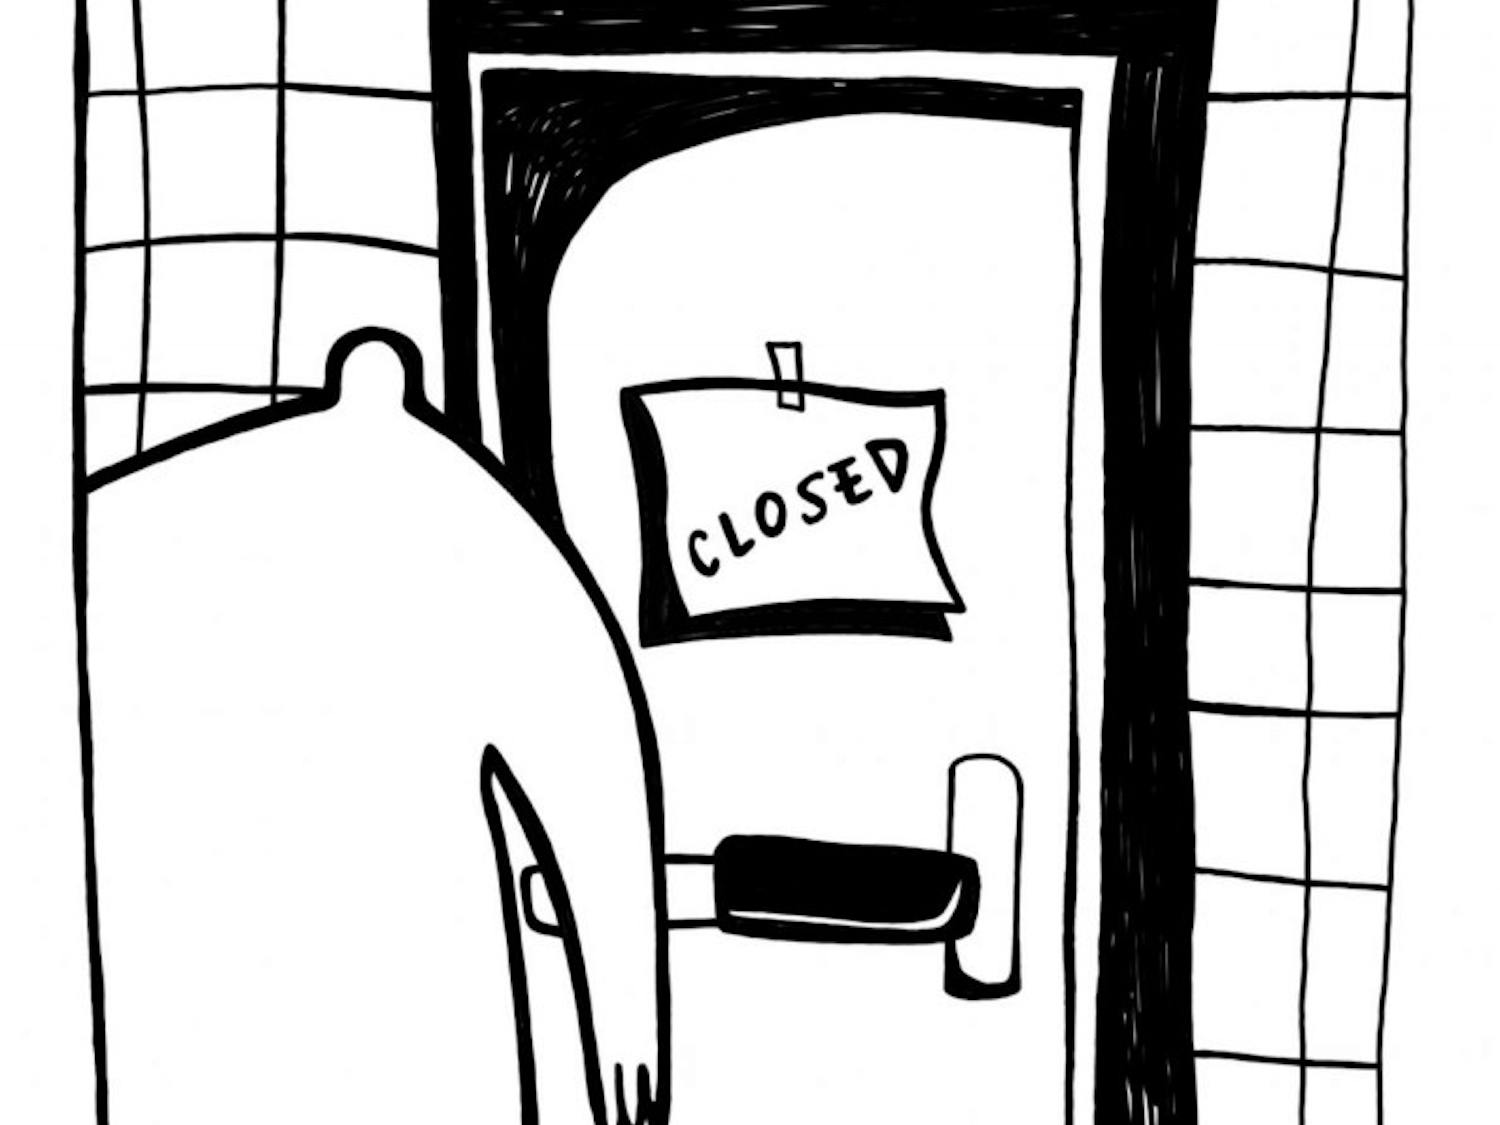 closed-cartoon